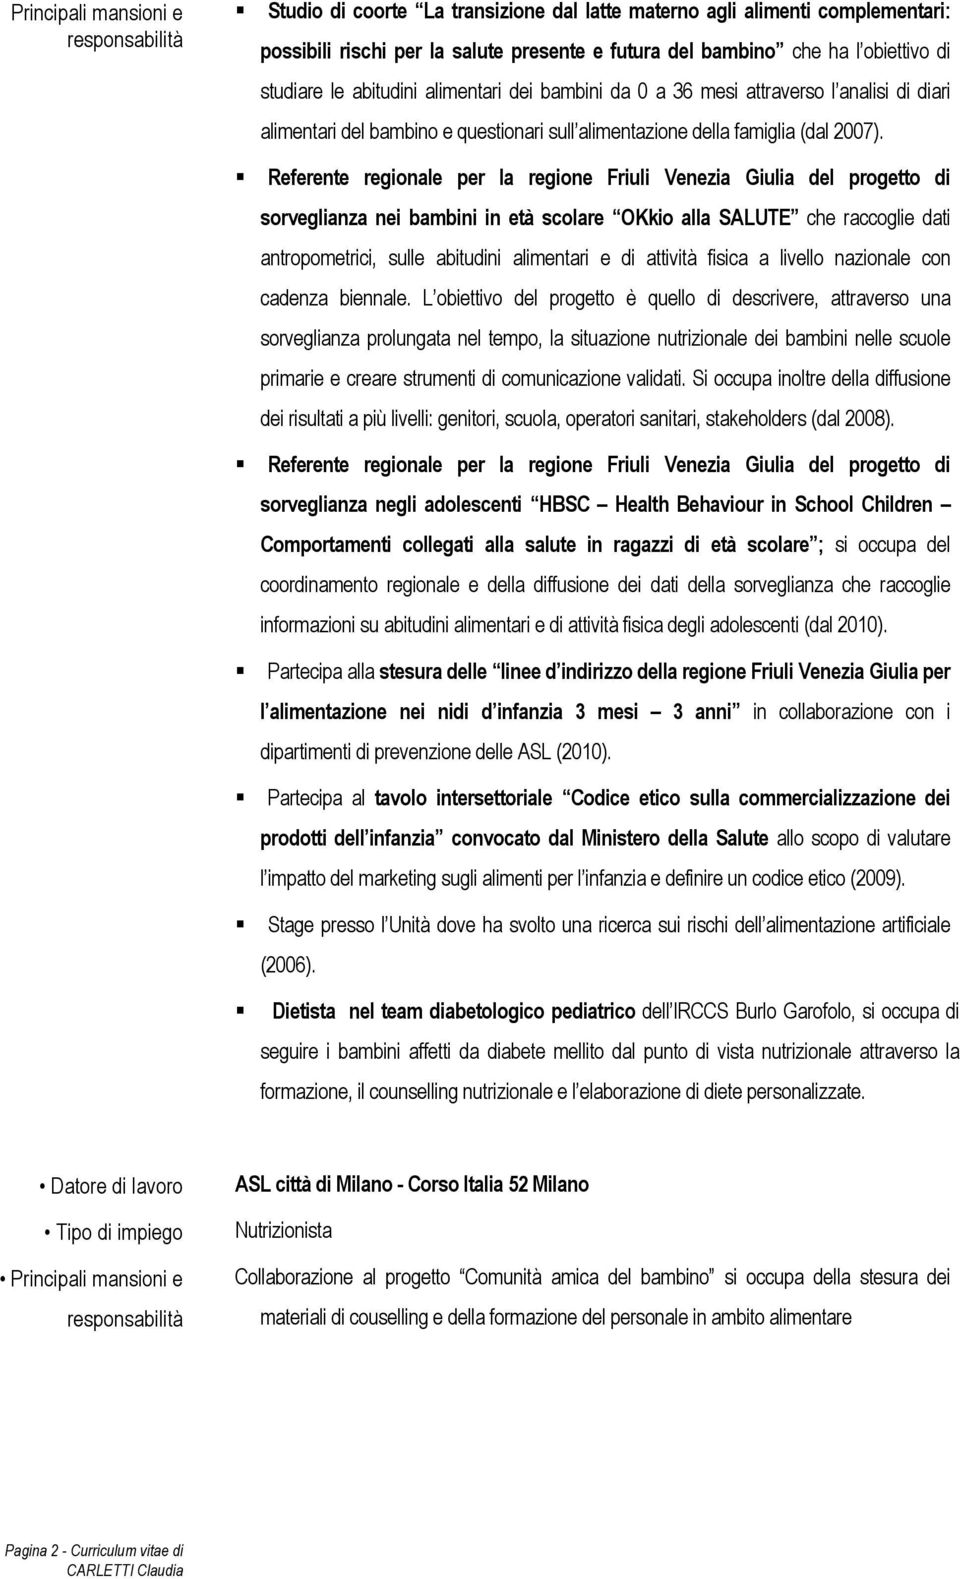 Referente regionale per la regione Friuli Venezia Giulia del progetto di sorveglianza nei bambini in età scolare OKkio alla SALUTE che raccoglie dati antropometrici, sulle abitudini alimentari e di